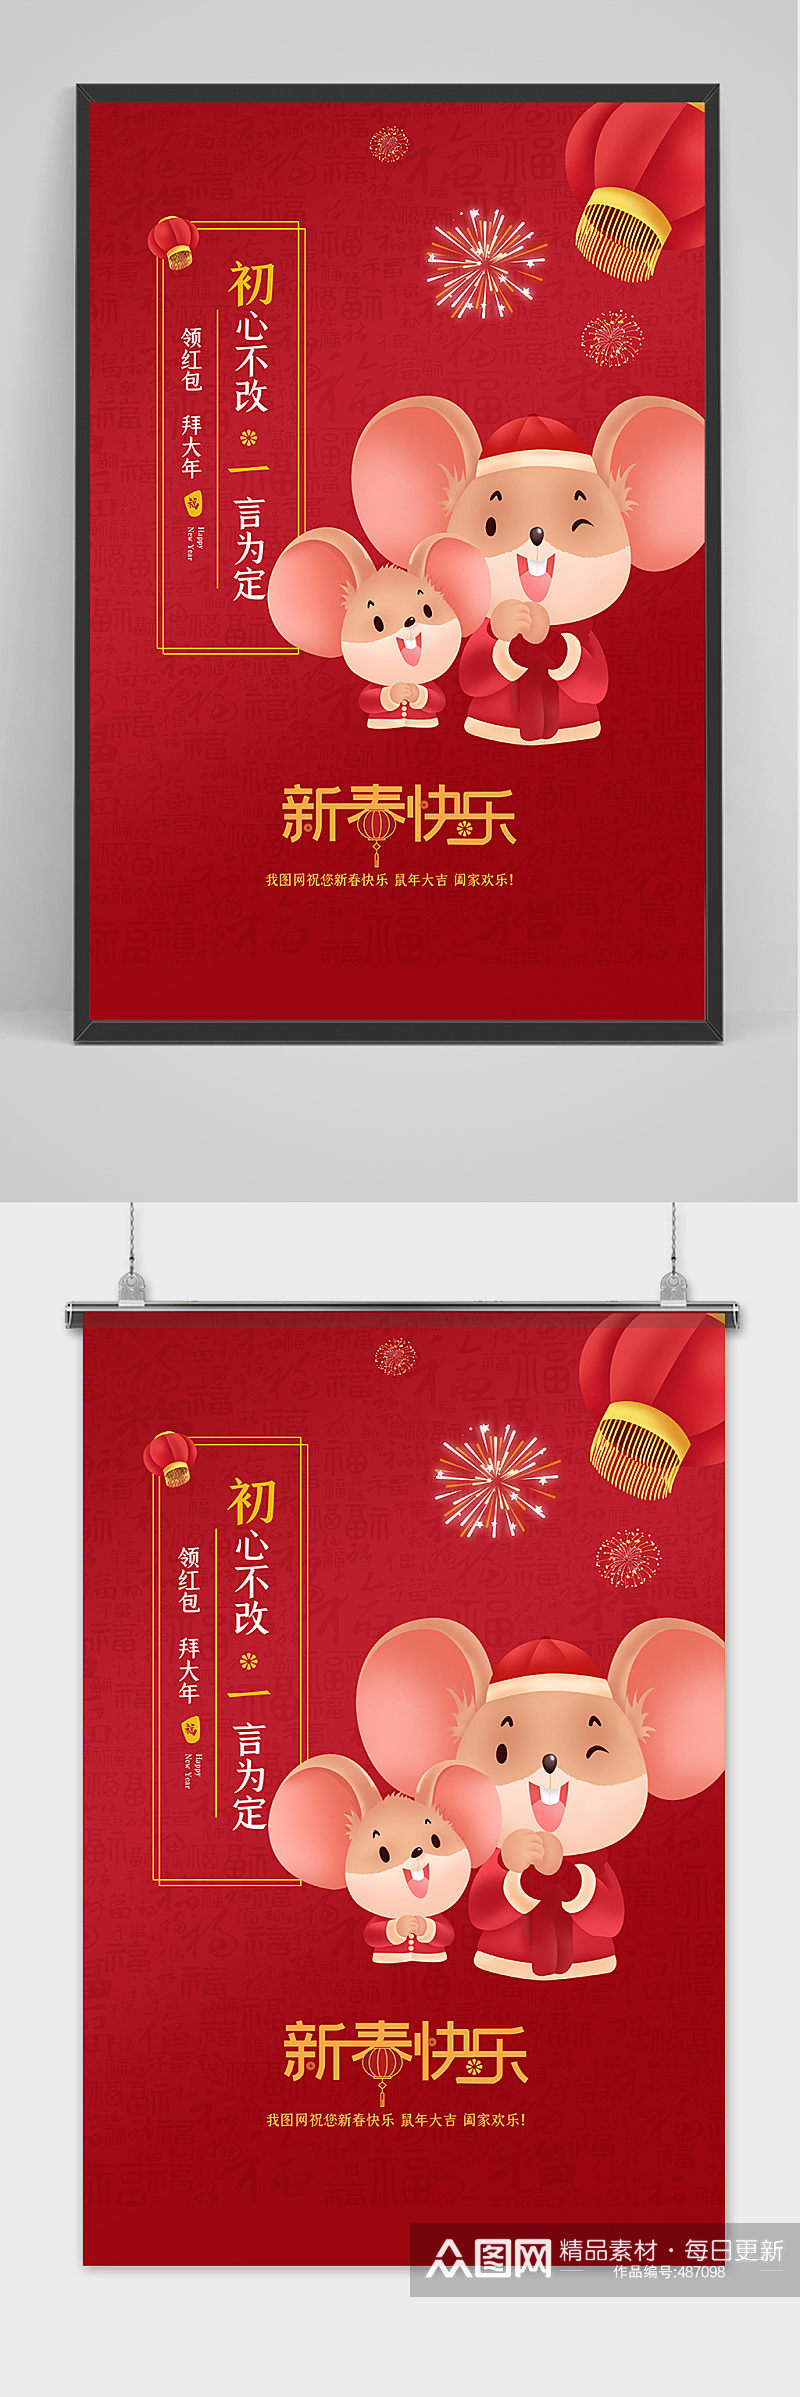 春节习俗大年初一海报设计素材